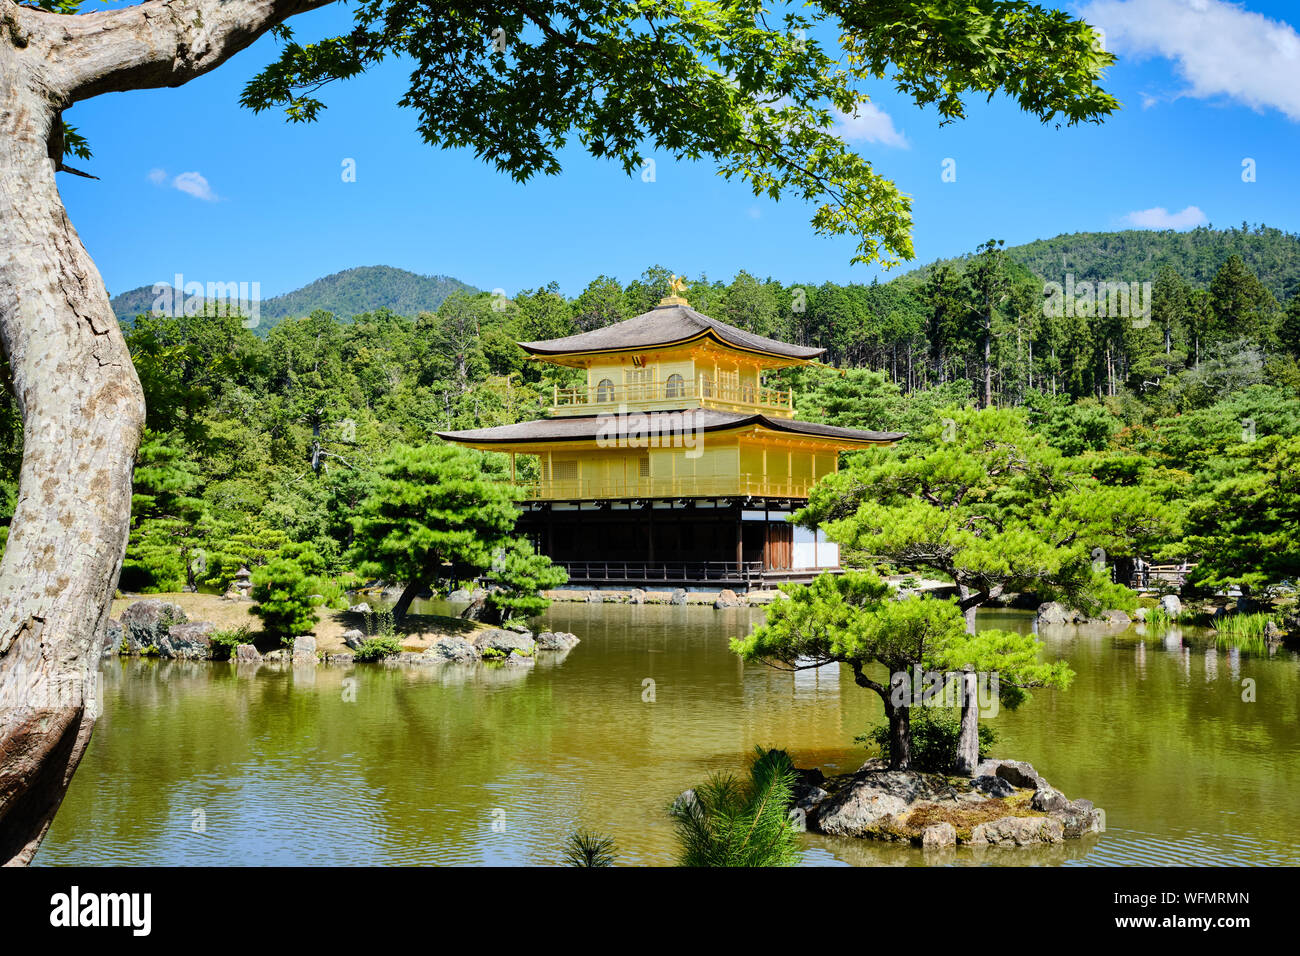 Kyoto / Giappone - 5 Agosto 2019: Kinkakuji o il padiglione dorato nella parte nord di Kyoto, Giappone si vede attraverso il grande stagno. Foto Stock